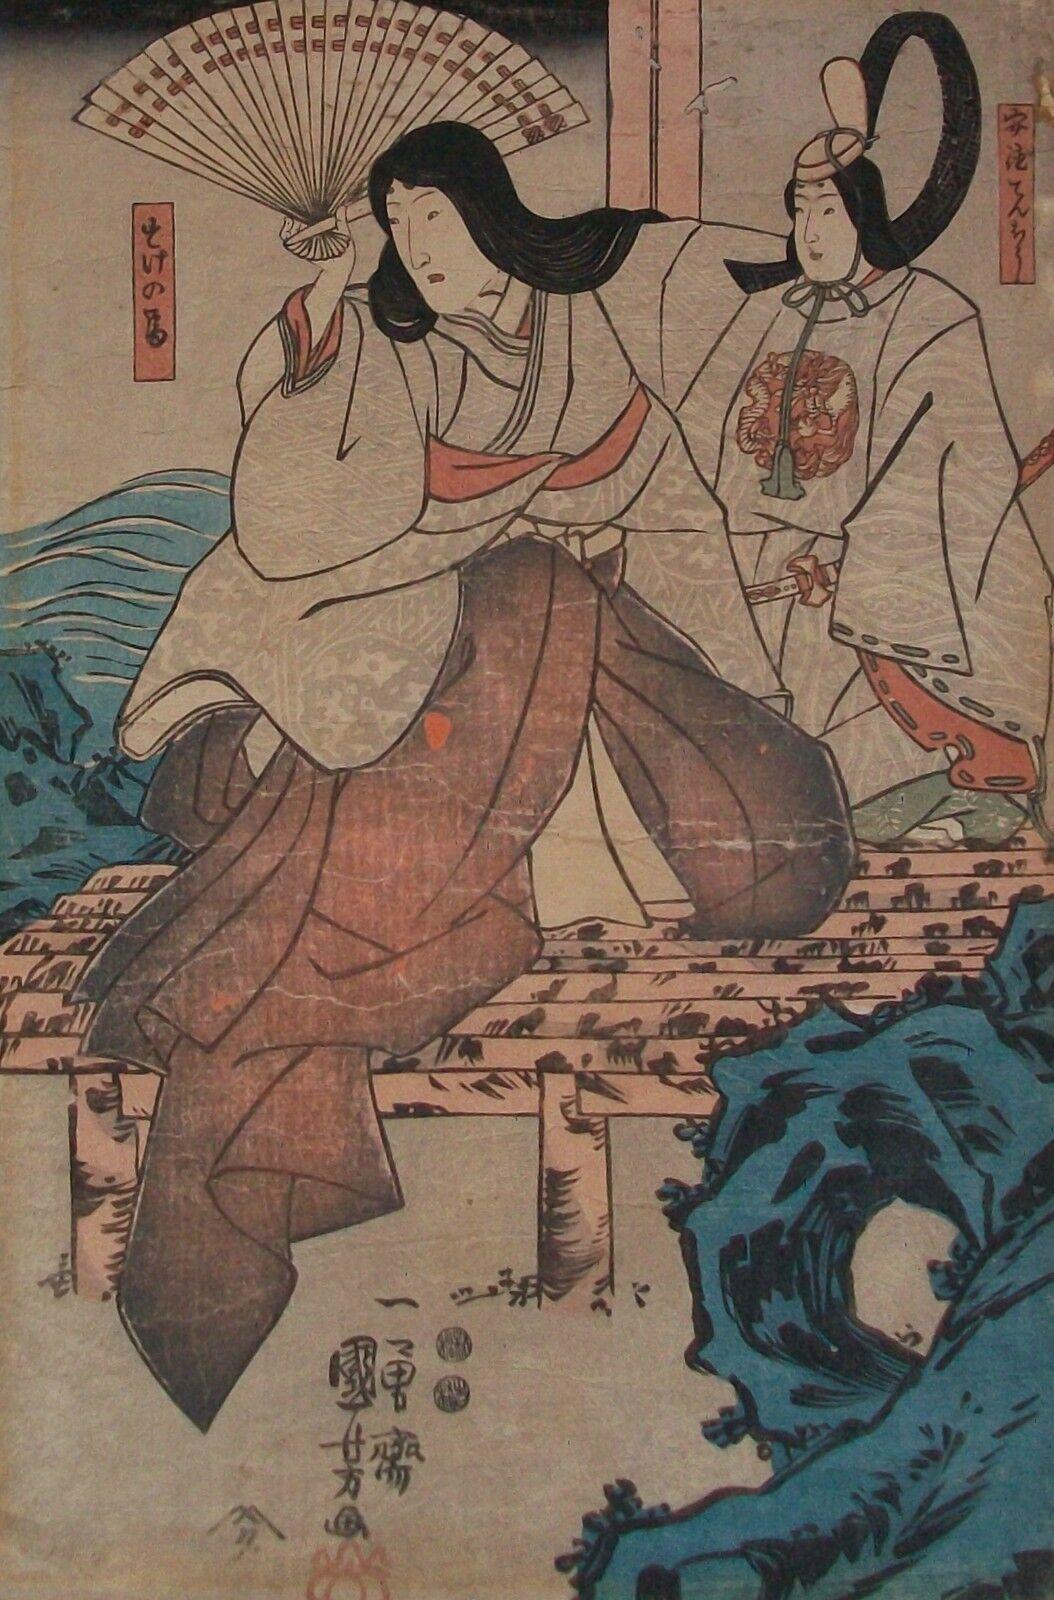 UTAGAWA KUNIYOSHI (1797-1861) - Antiker Farbholzschnitt - aus der Serie der Schauspieler - nur drittes Blatt (Teil eines Triptychons) - in einer alten Matte - ungerahmt - Japan - um 1847.

Guter antiker Zustand - Wurm-/Alterslöcher - Falten und